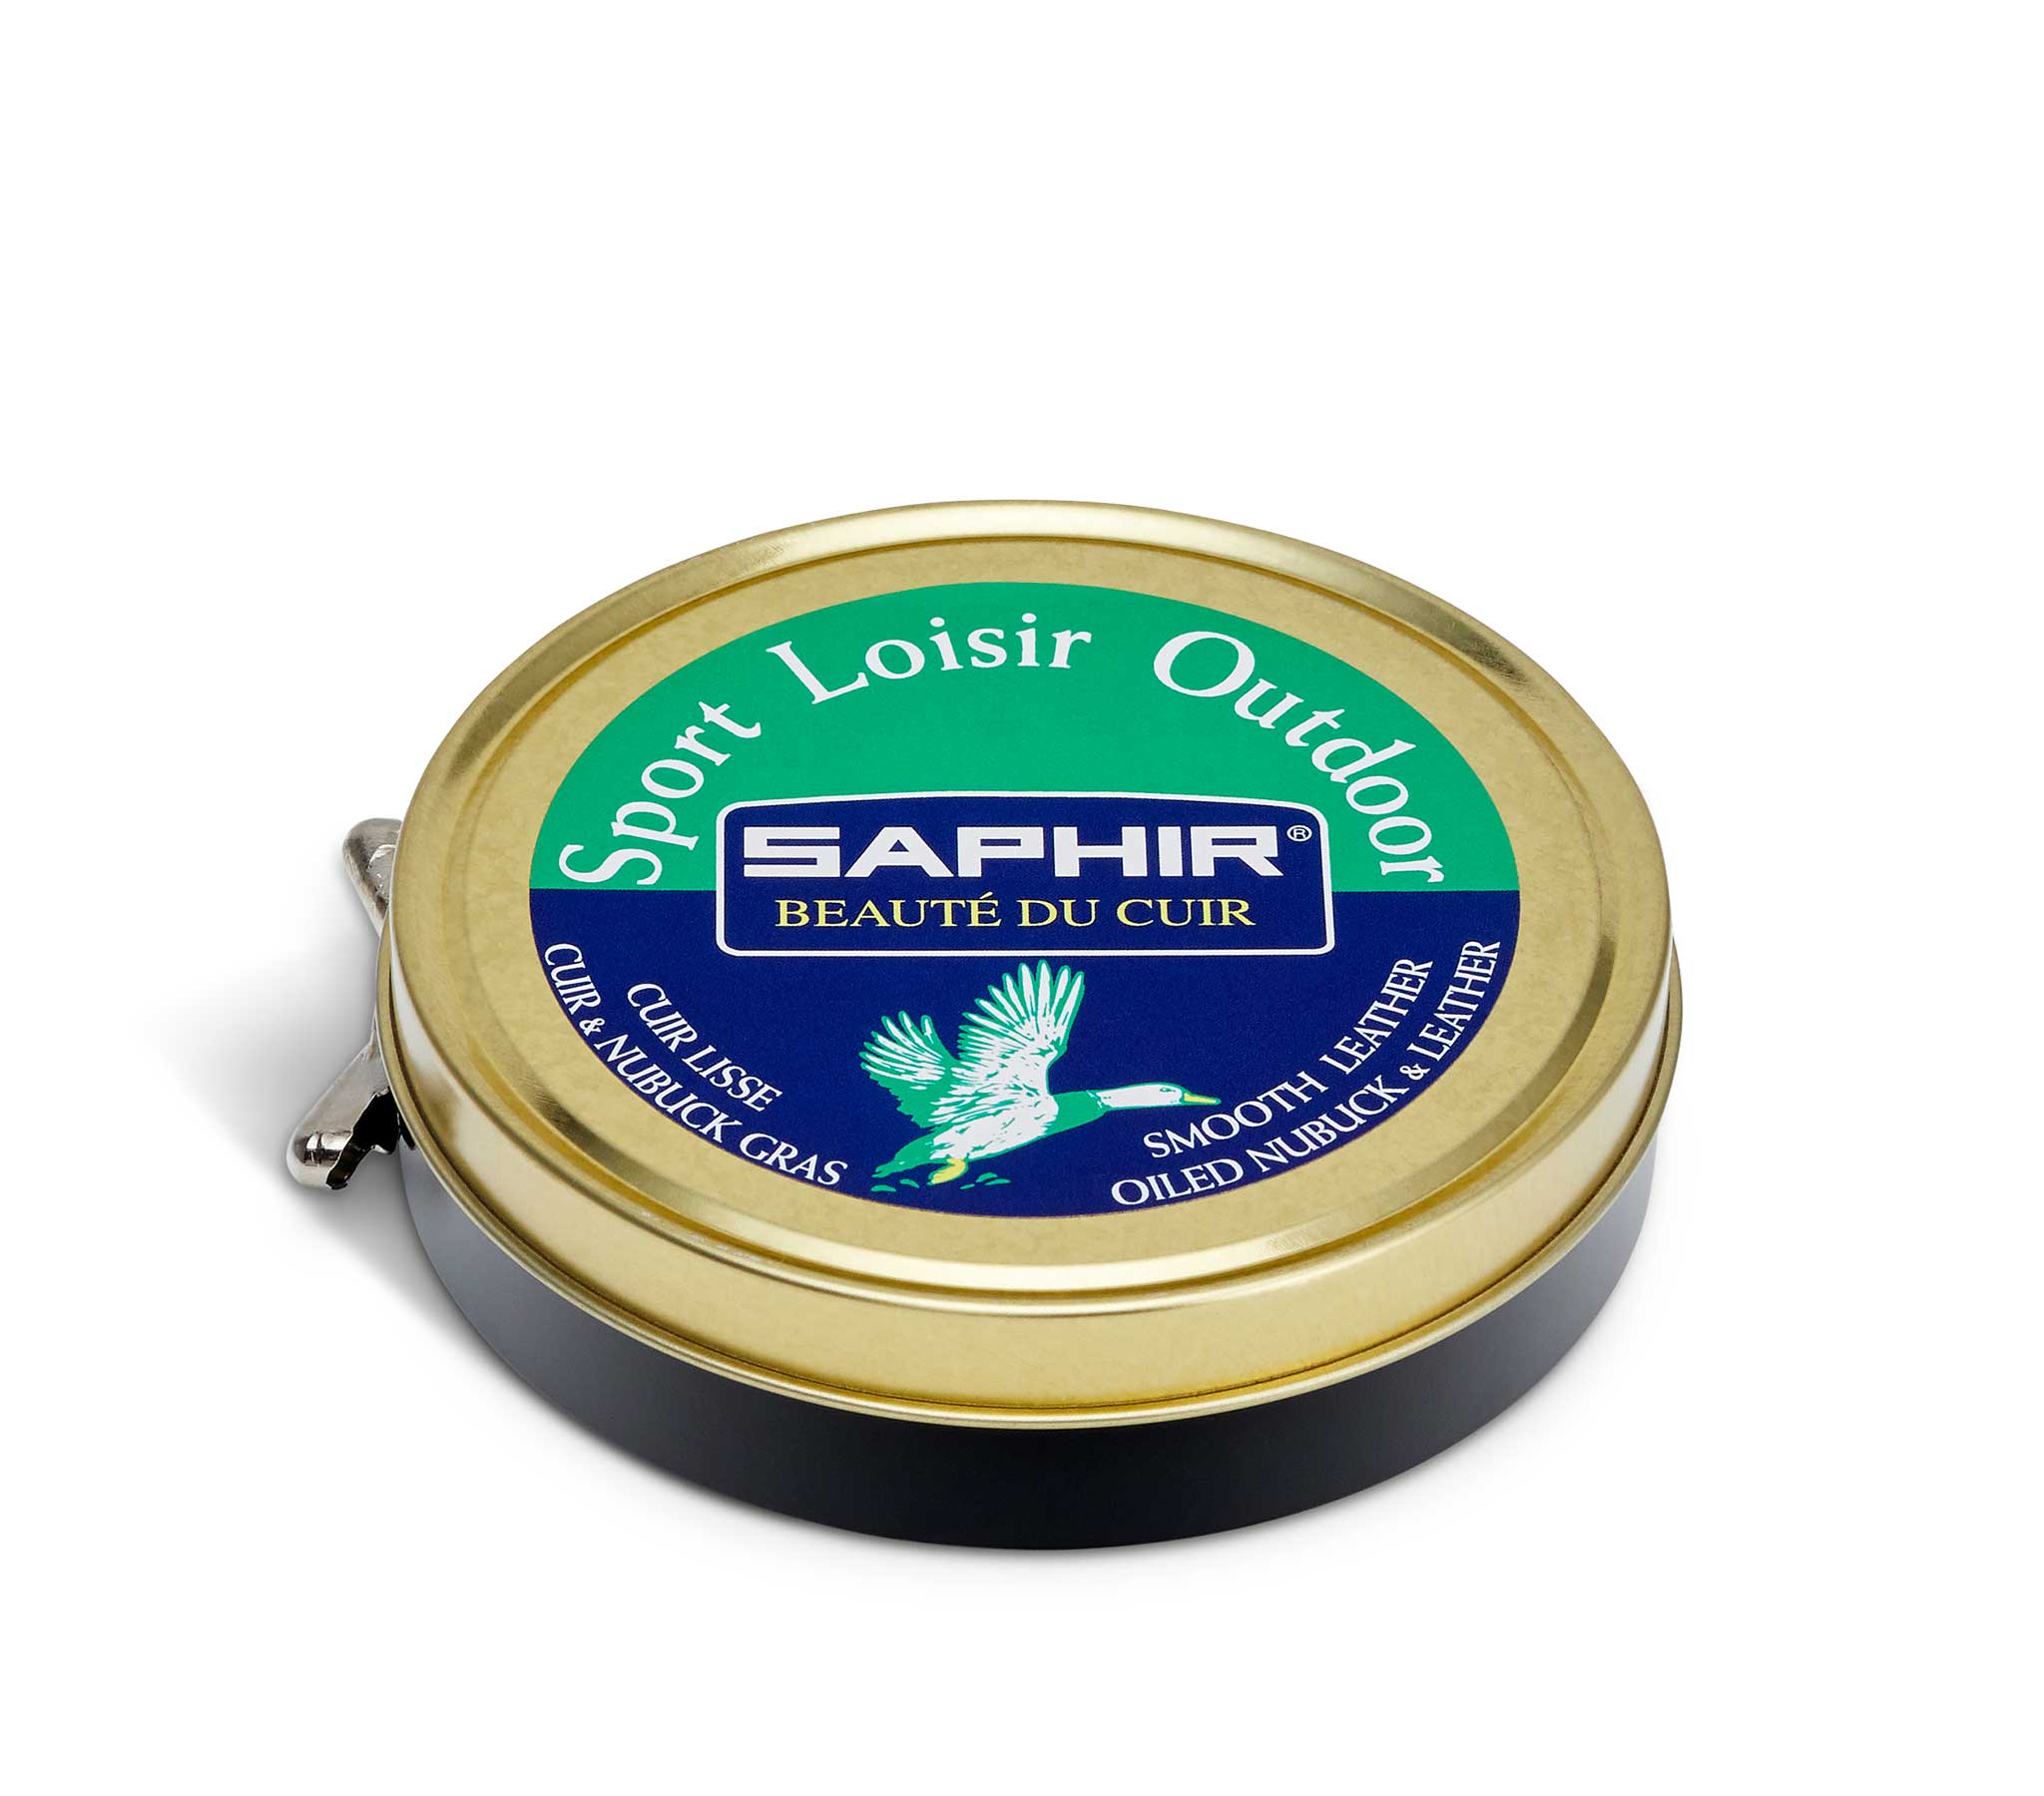 Saphir Creme Cuir Gras - Cream for Oiled Leather 125ml (Neutral)